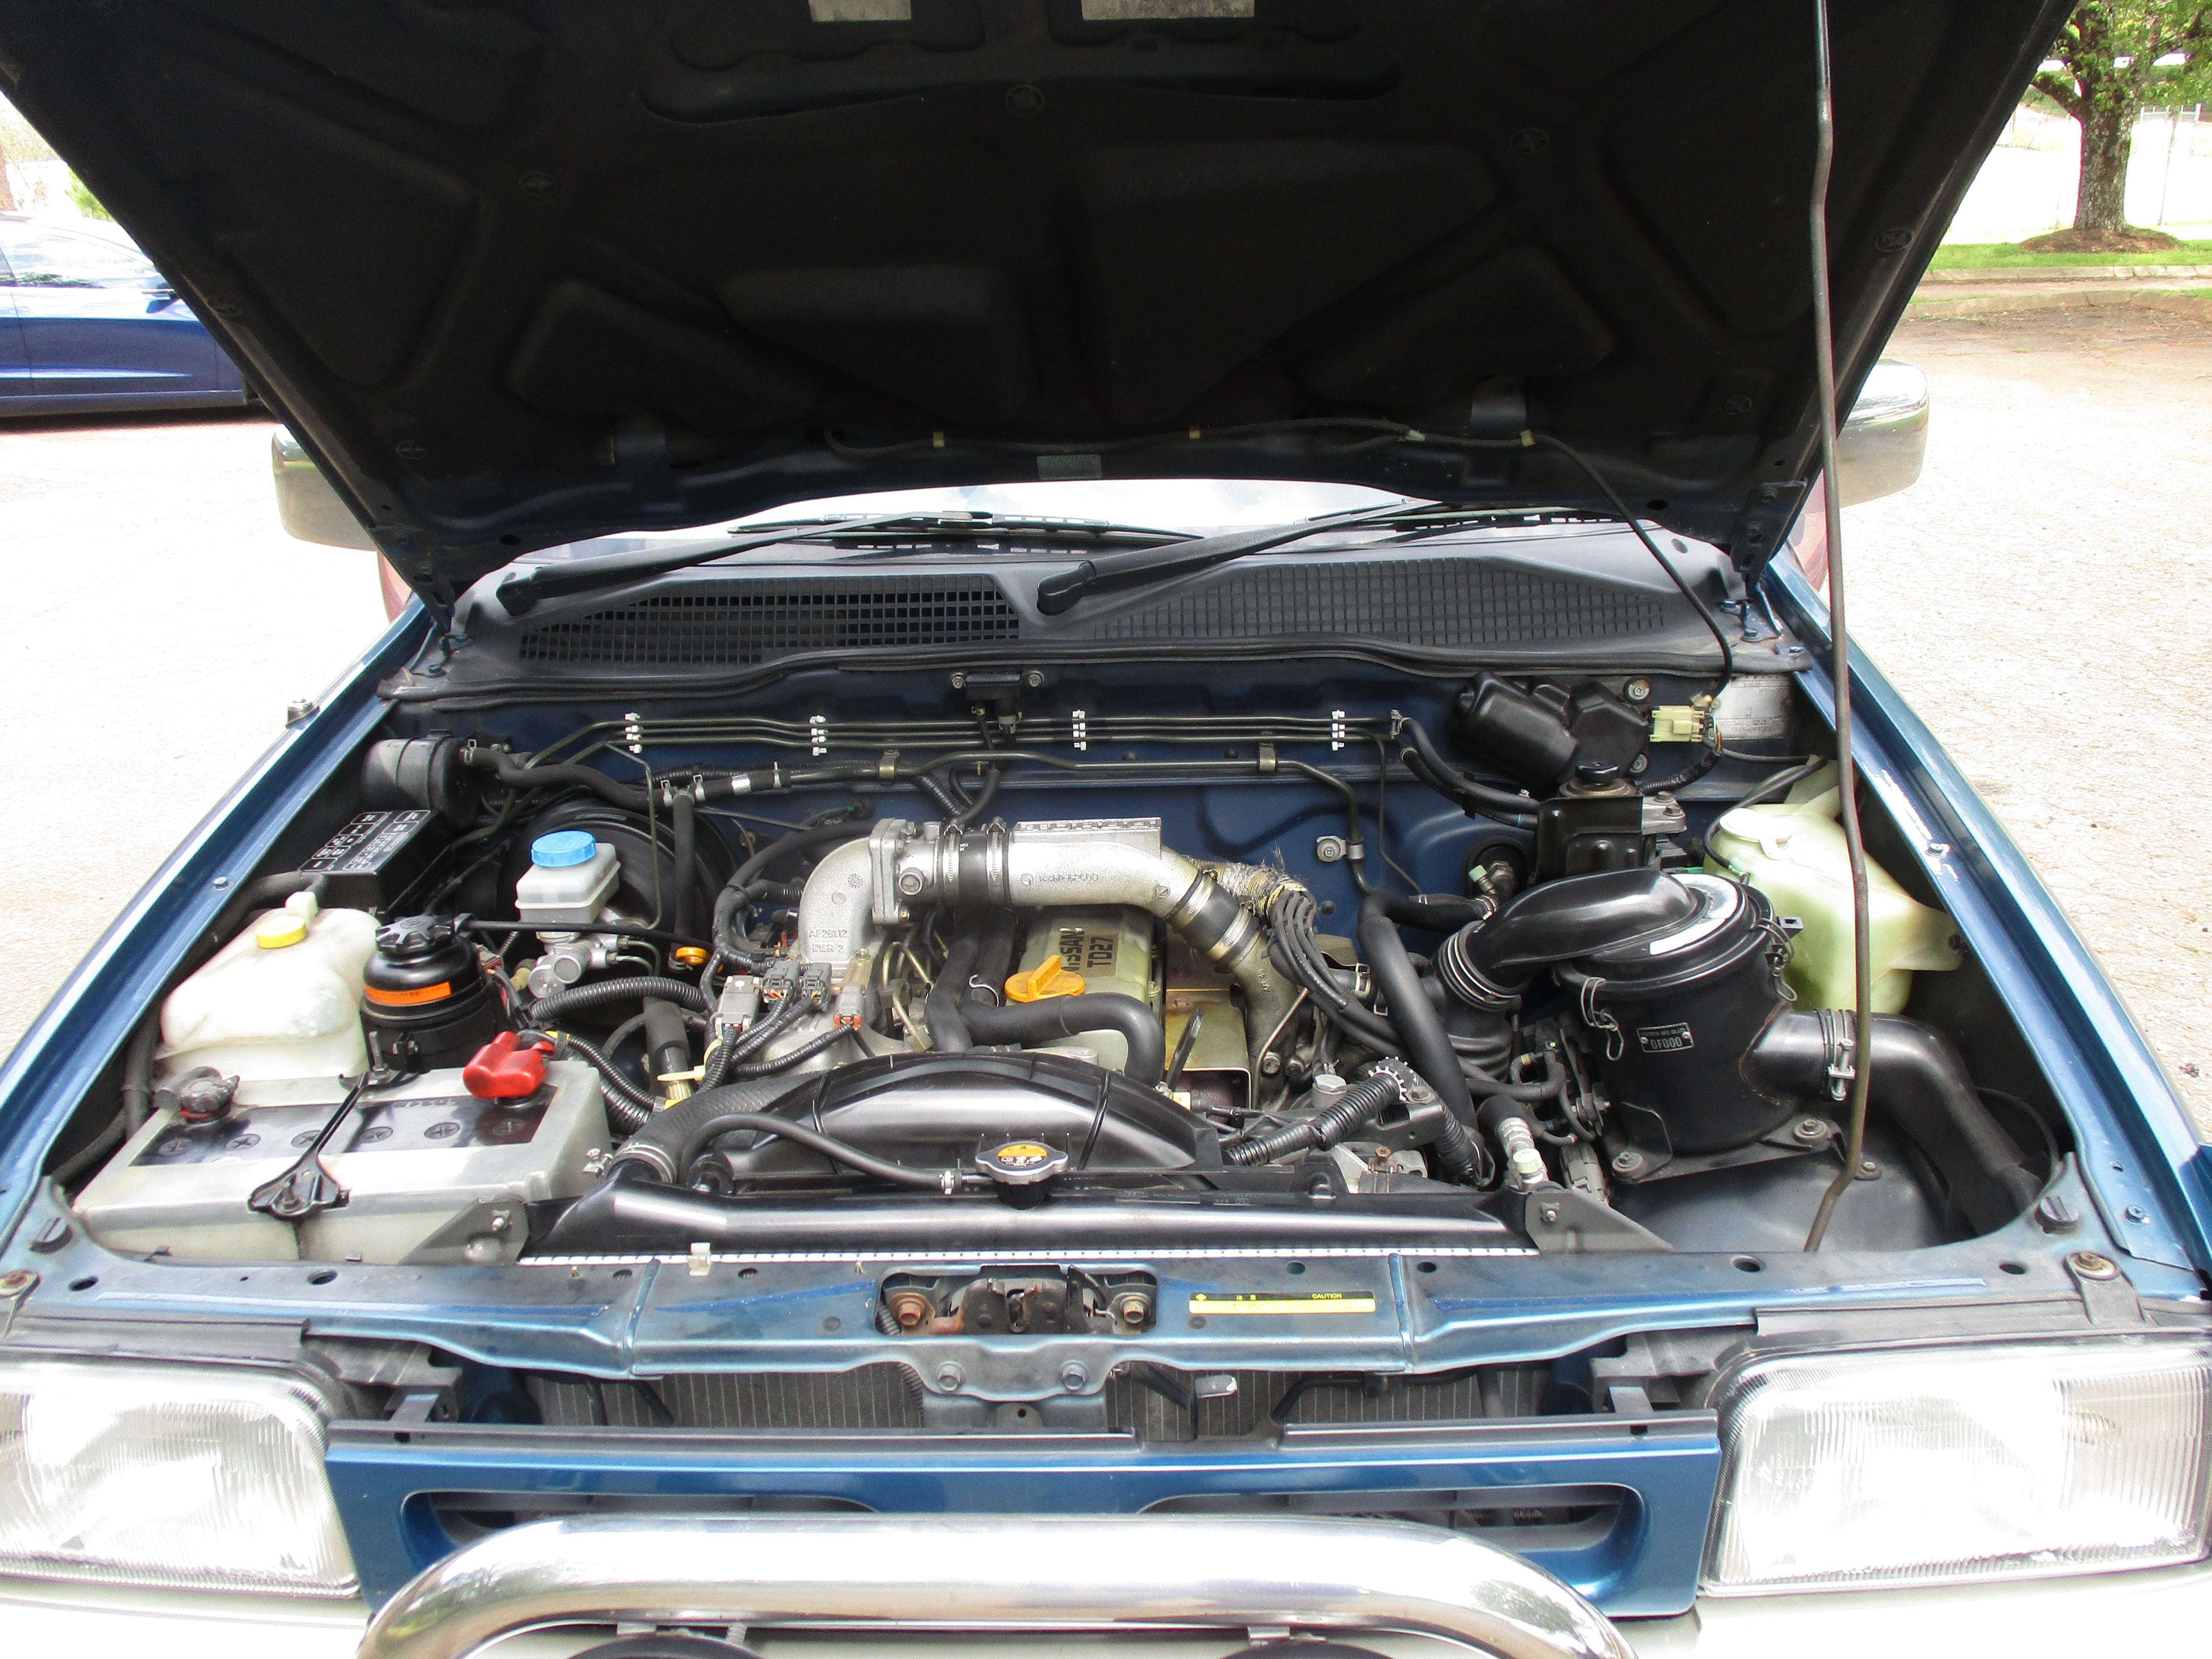 JDM 94 Nissan Mistral 4WD Turbo Diesel RHD 4x4 SUV